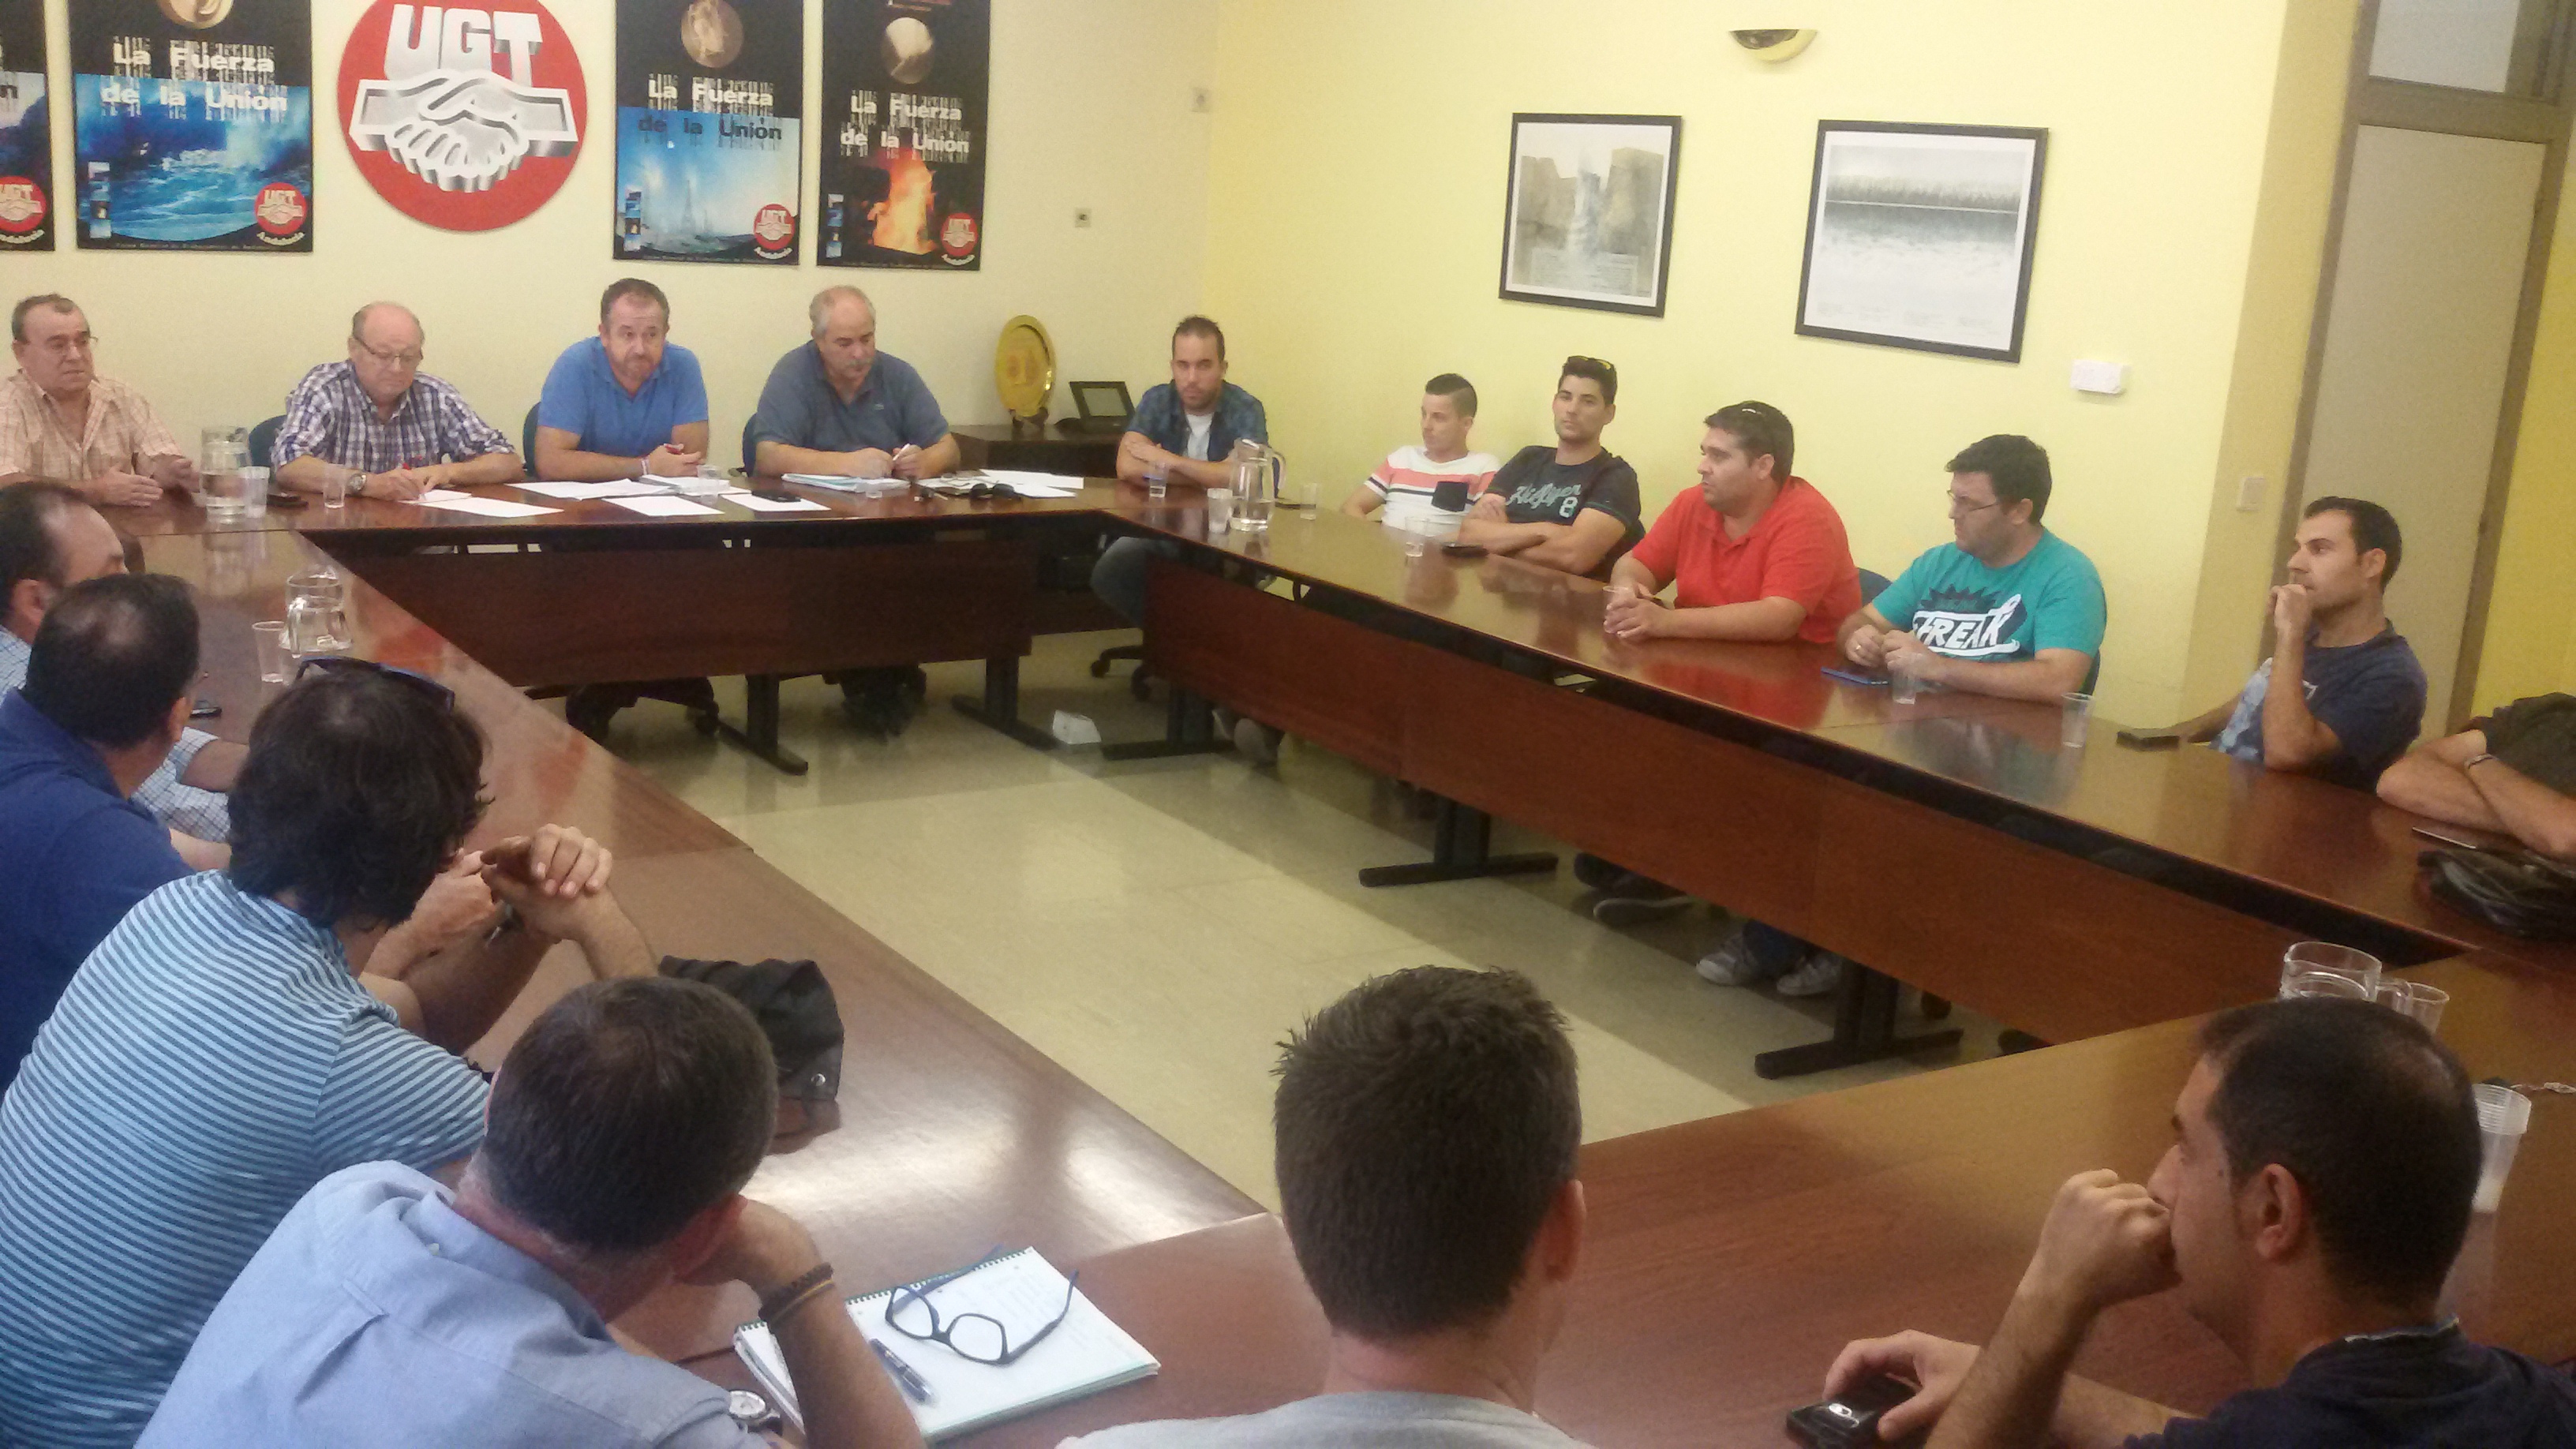 Responsables de MCA-UGT exponen la situación de los trabajadores de mantenimiento en los centros hospitales del SAS en Andalucía